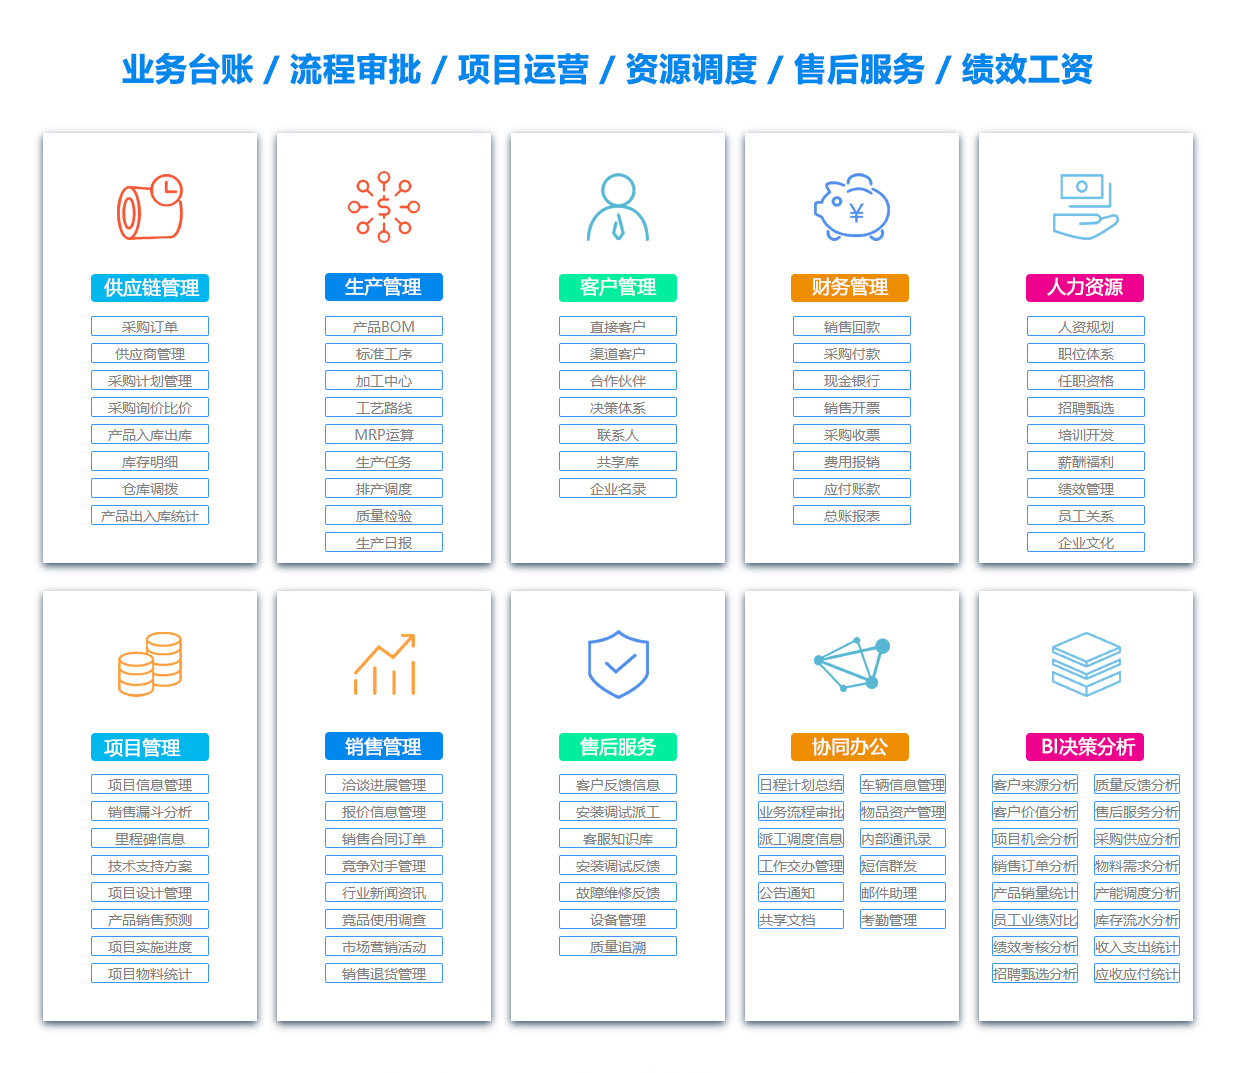 锦州BOM:物料清单软件